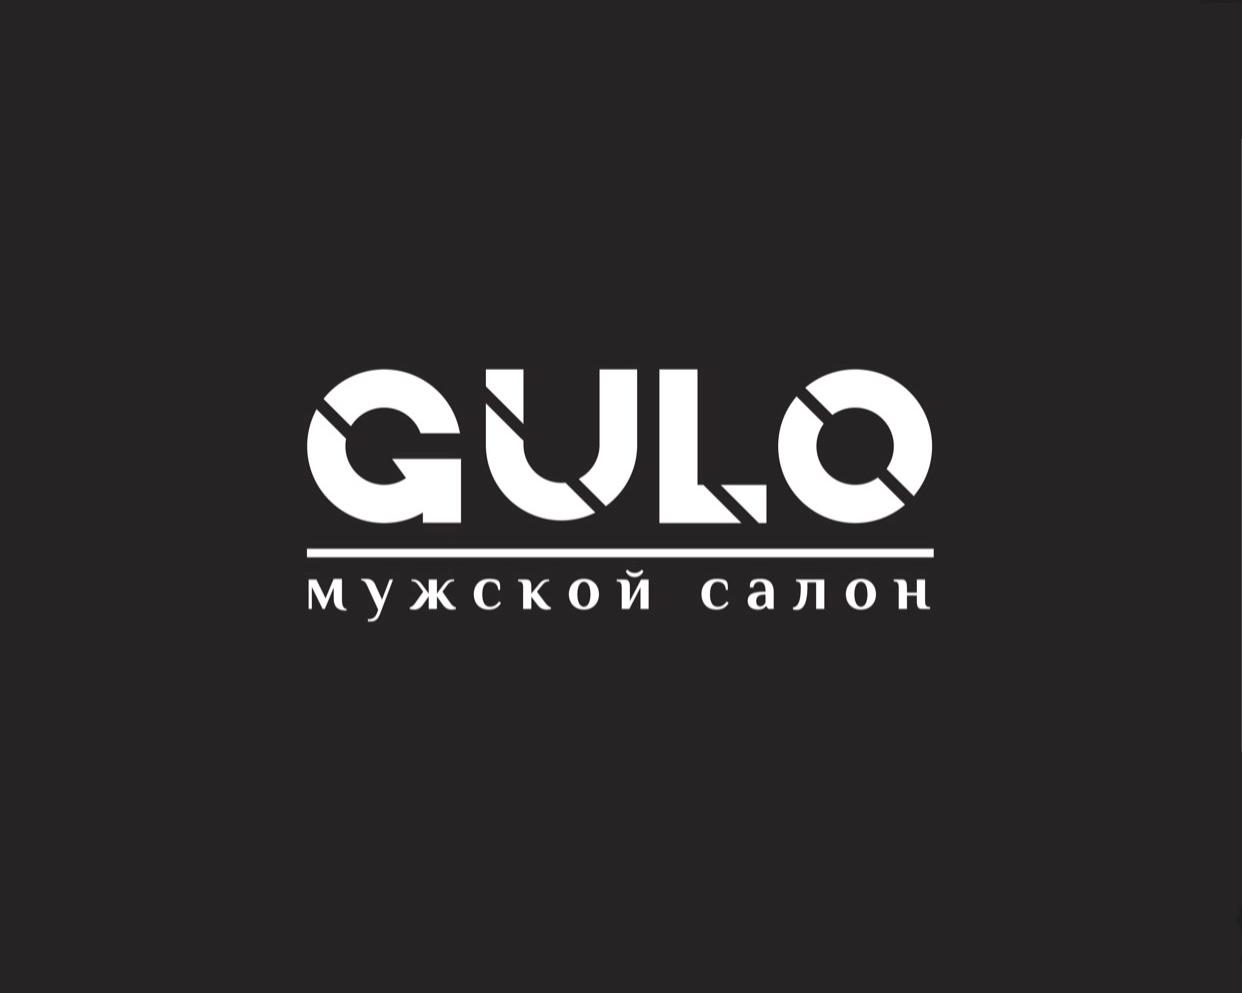 Мужской салон премиум-класса  "GULO" фото 1